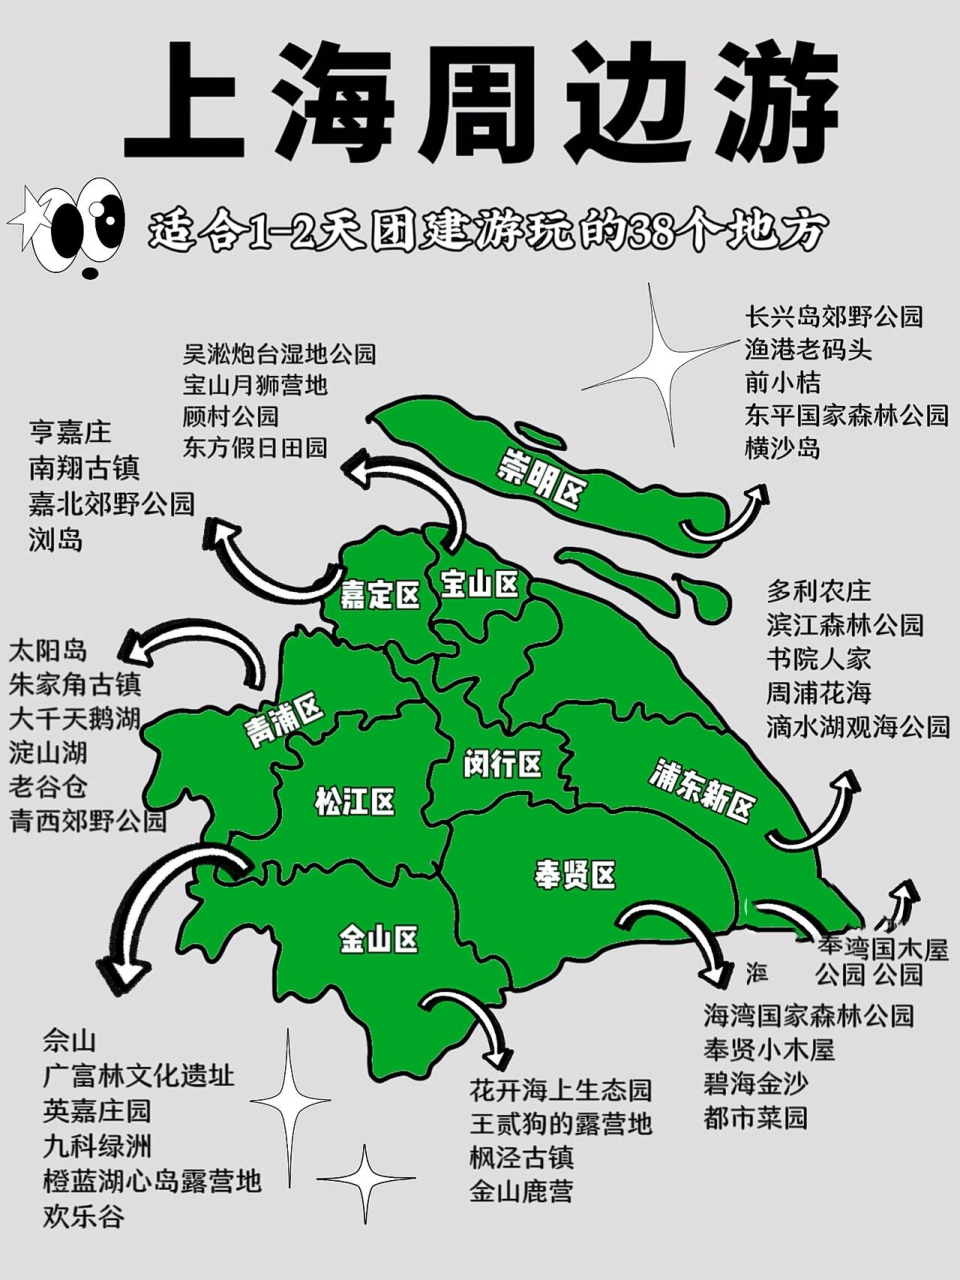 上海周边游7515超全打卡地图